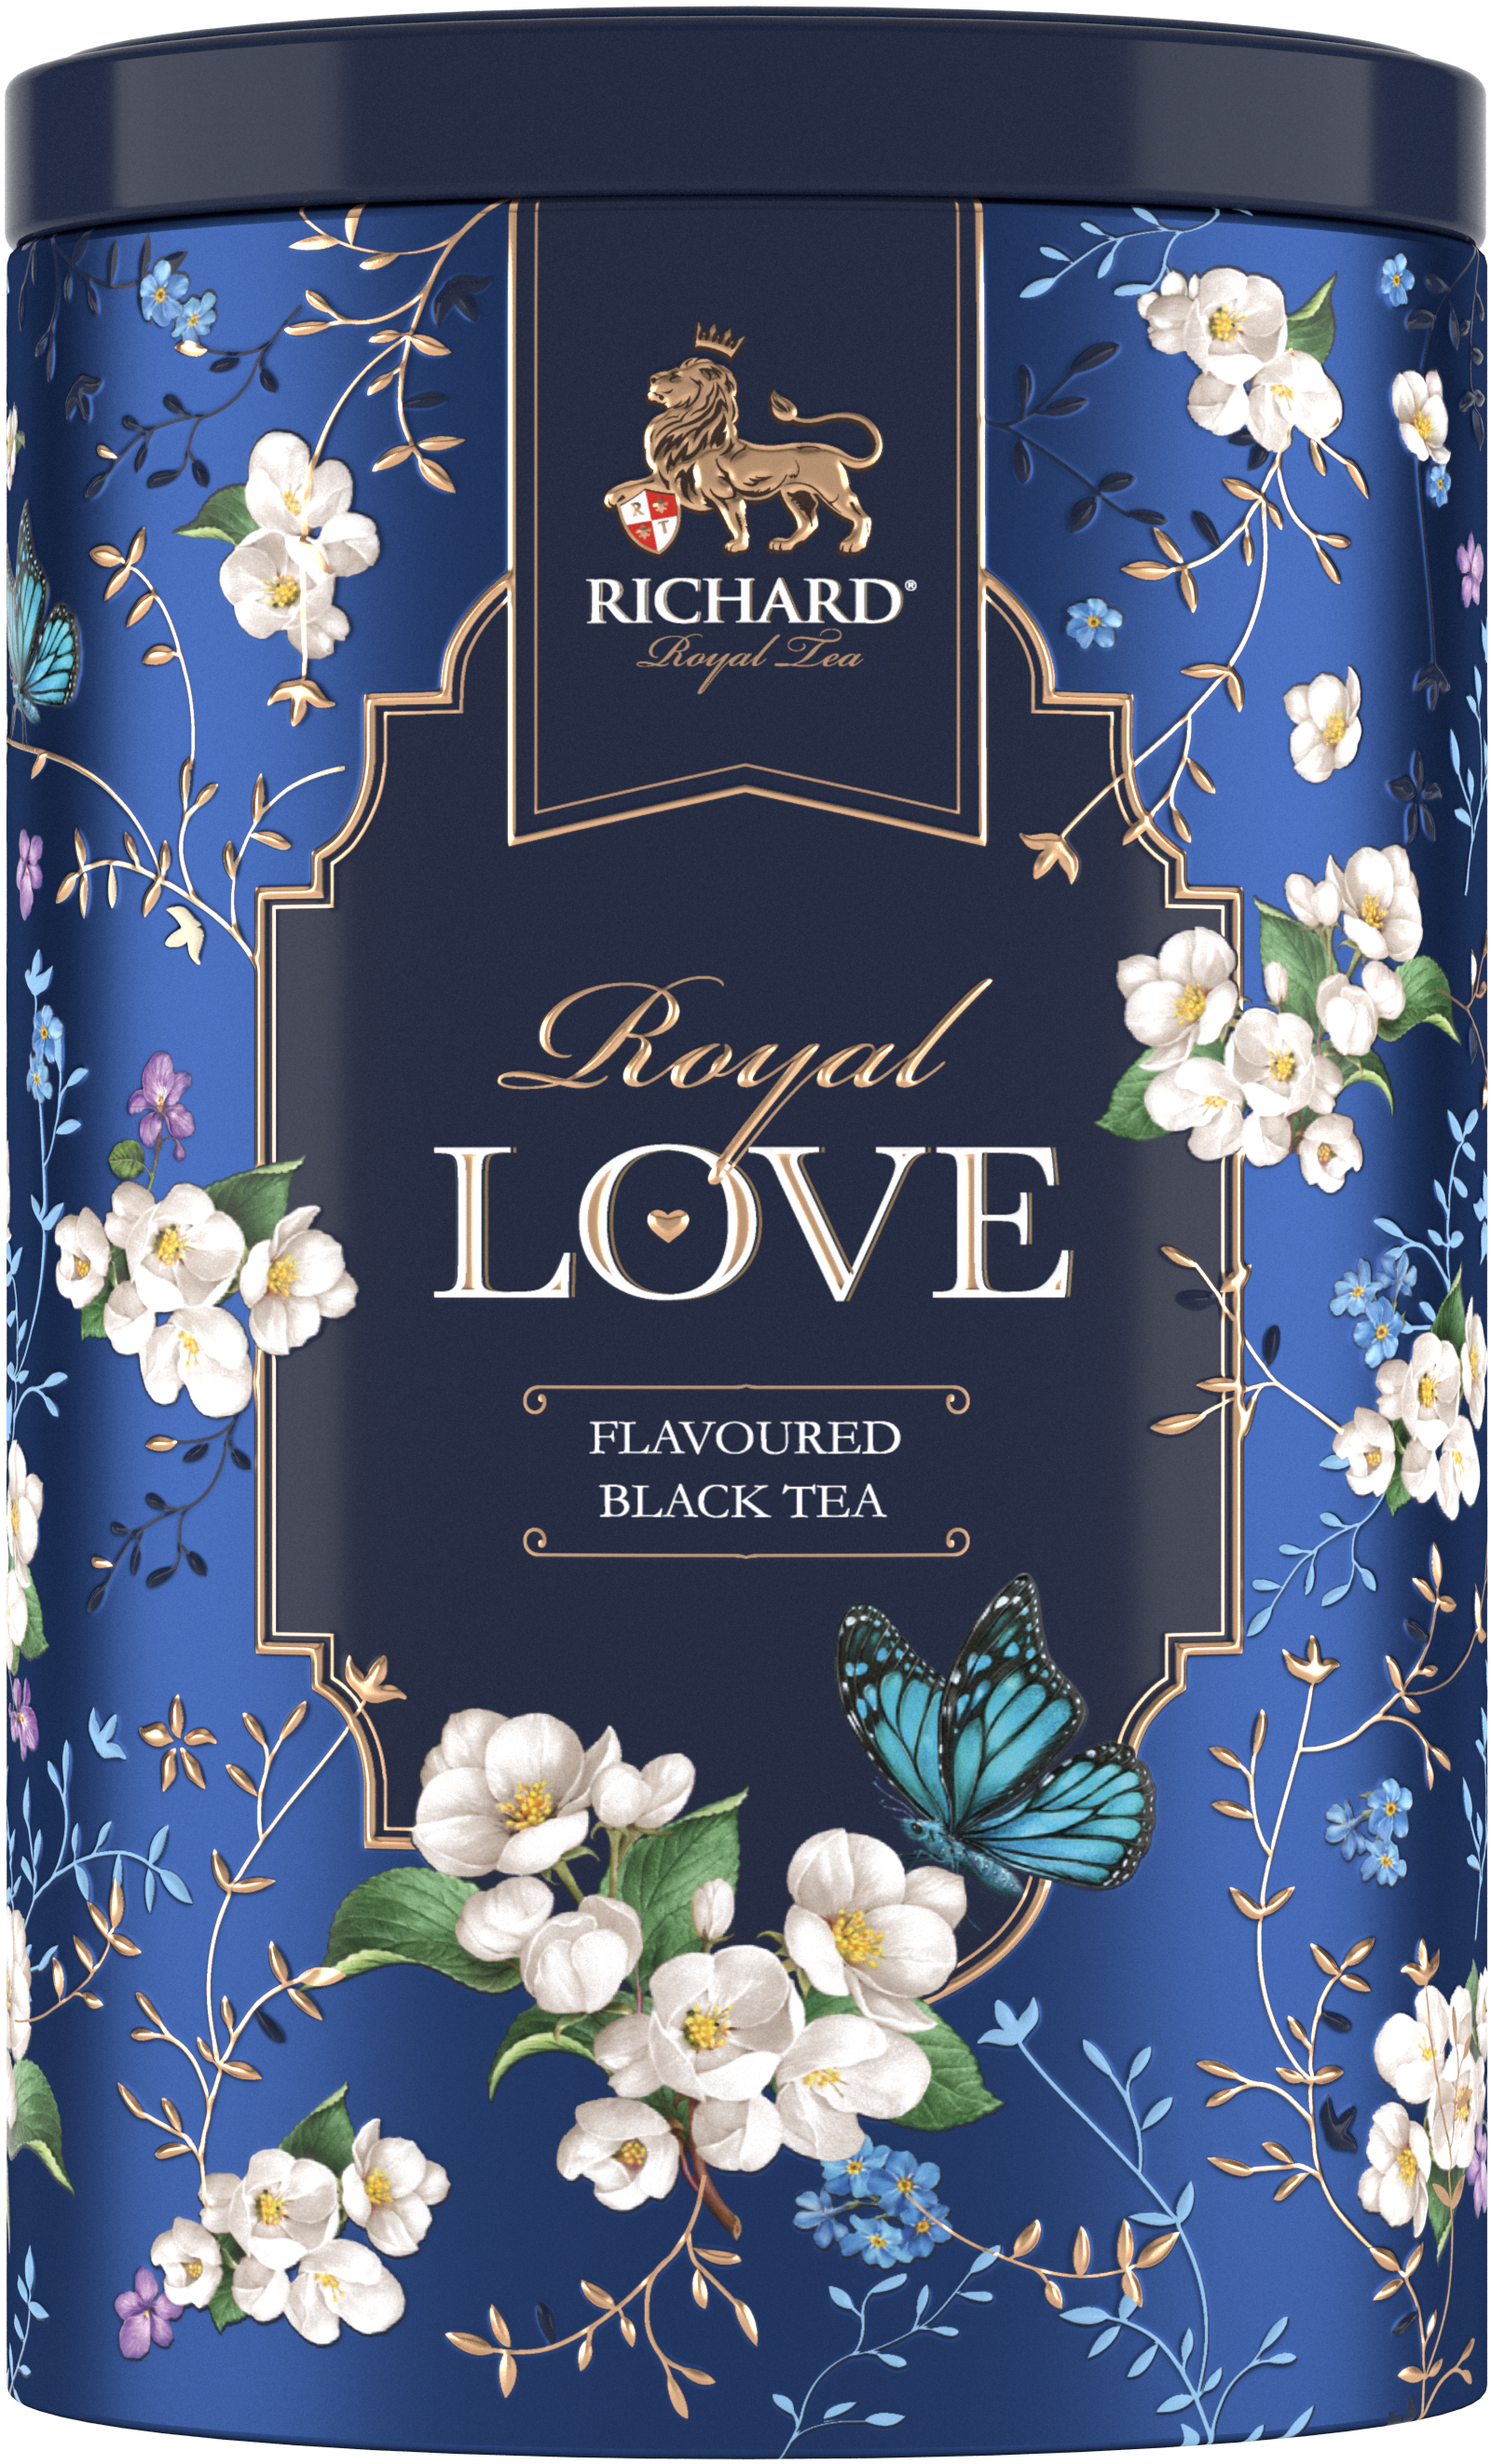 Royal Szerelem ízesített fekete tea, szálas, 80g, BLUE fémdobozban - RichardTeavn - vásároljon a 2990.00 Ft